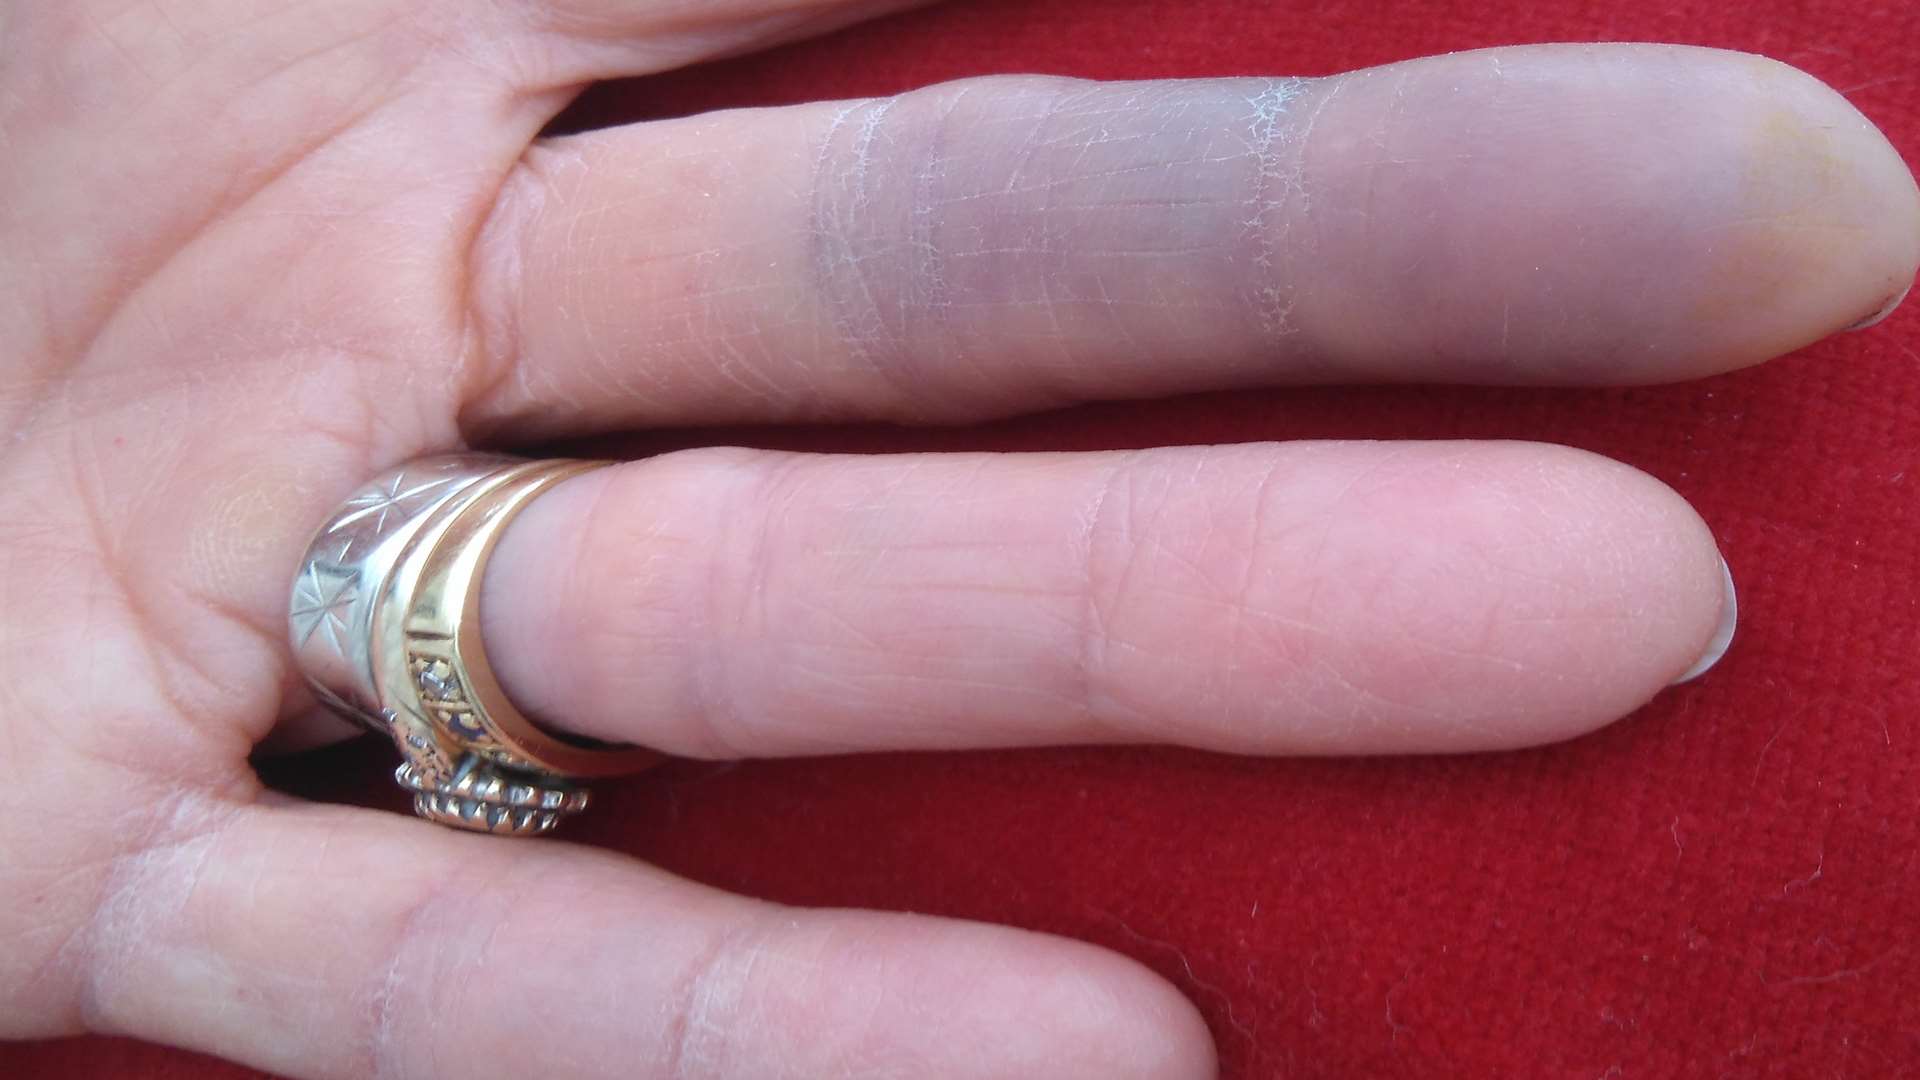 Patricia Tidbury's injured finger. Picture: John Westhrop